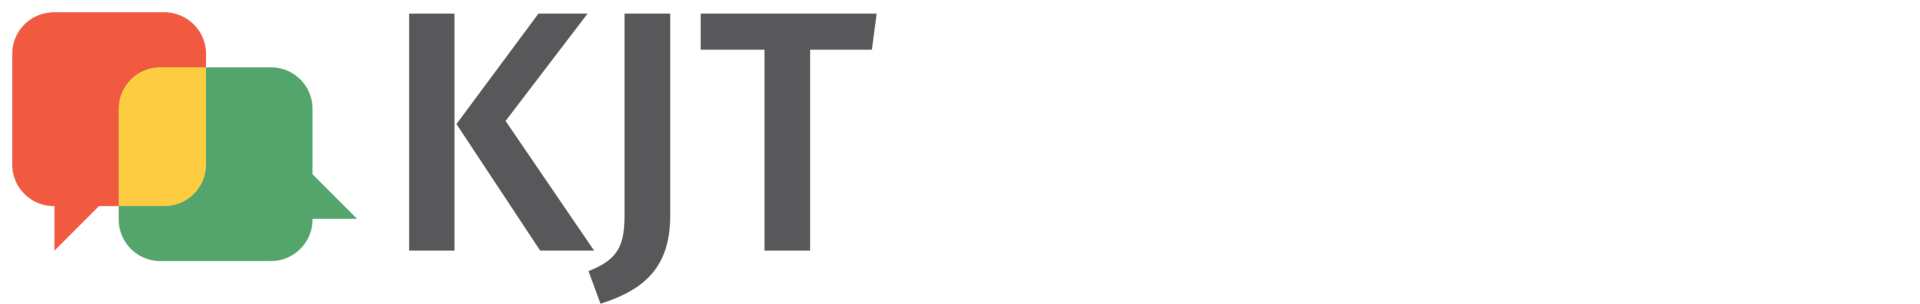 Logo partenaire